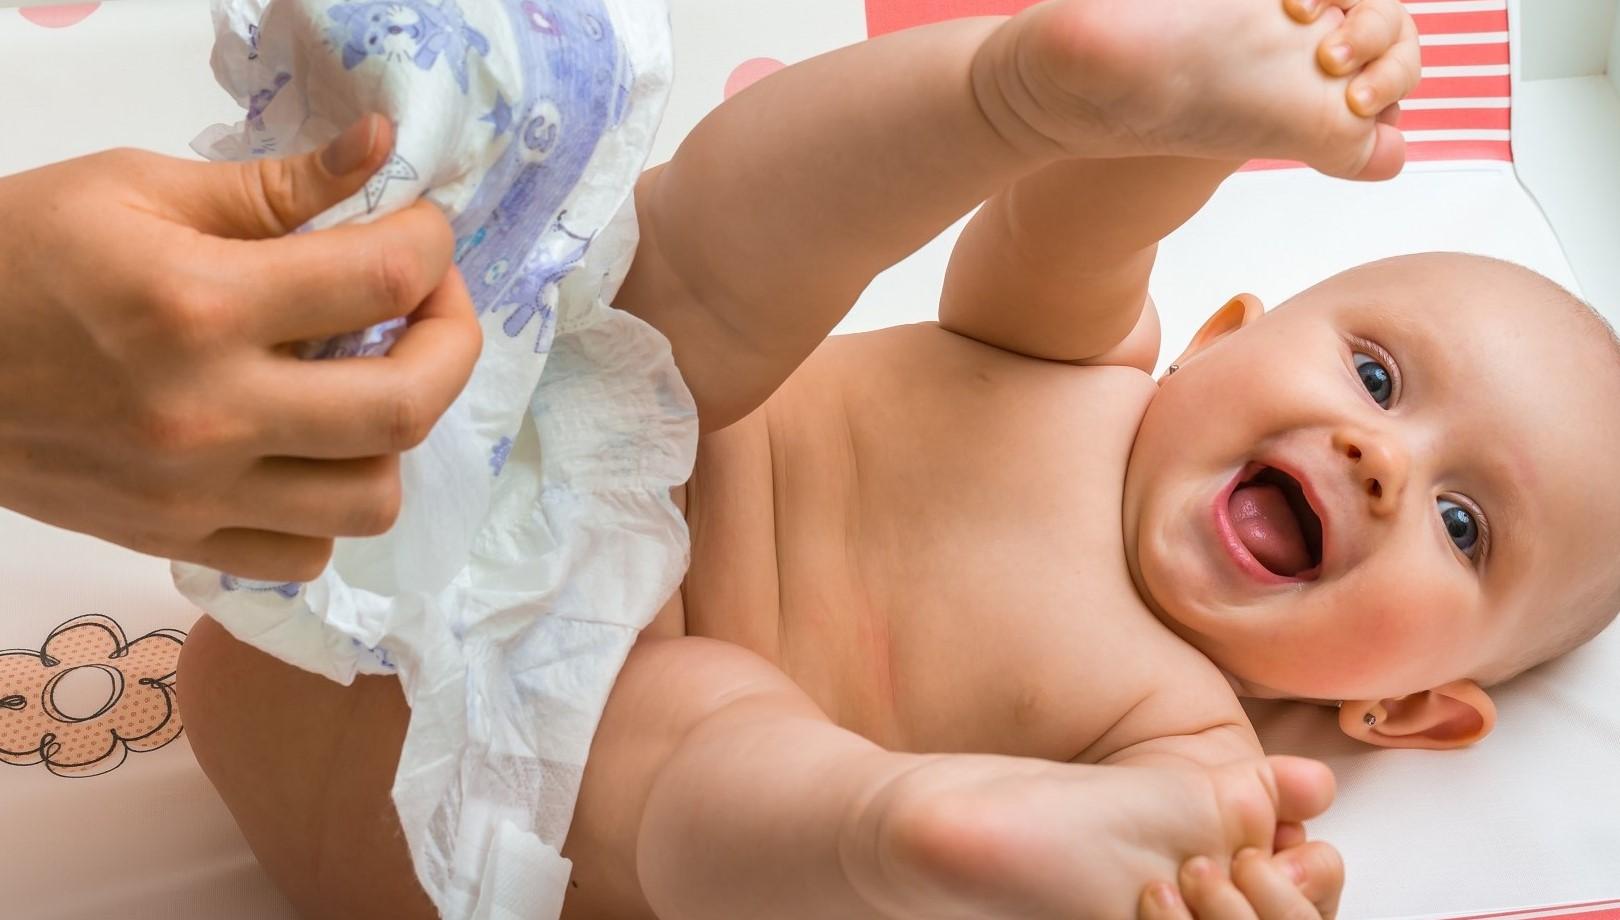 Для устранения дискомфорта важно правильно подобрать подгузник младенцу